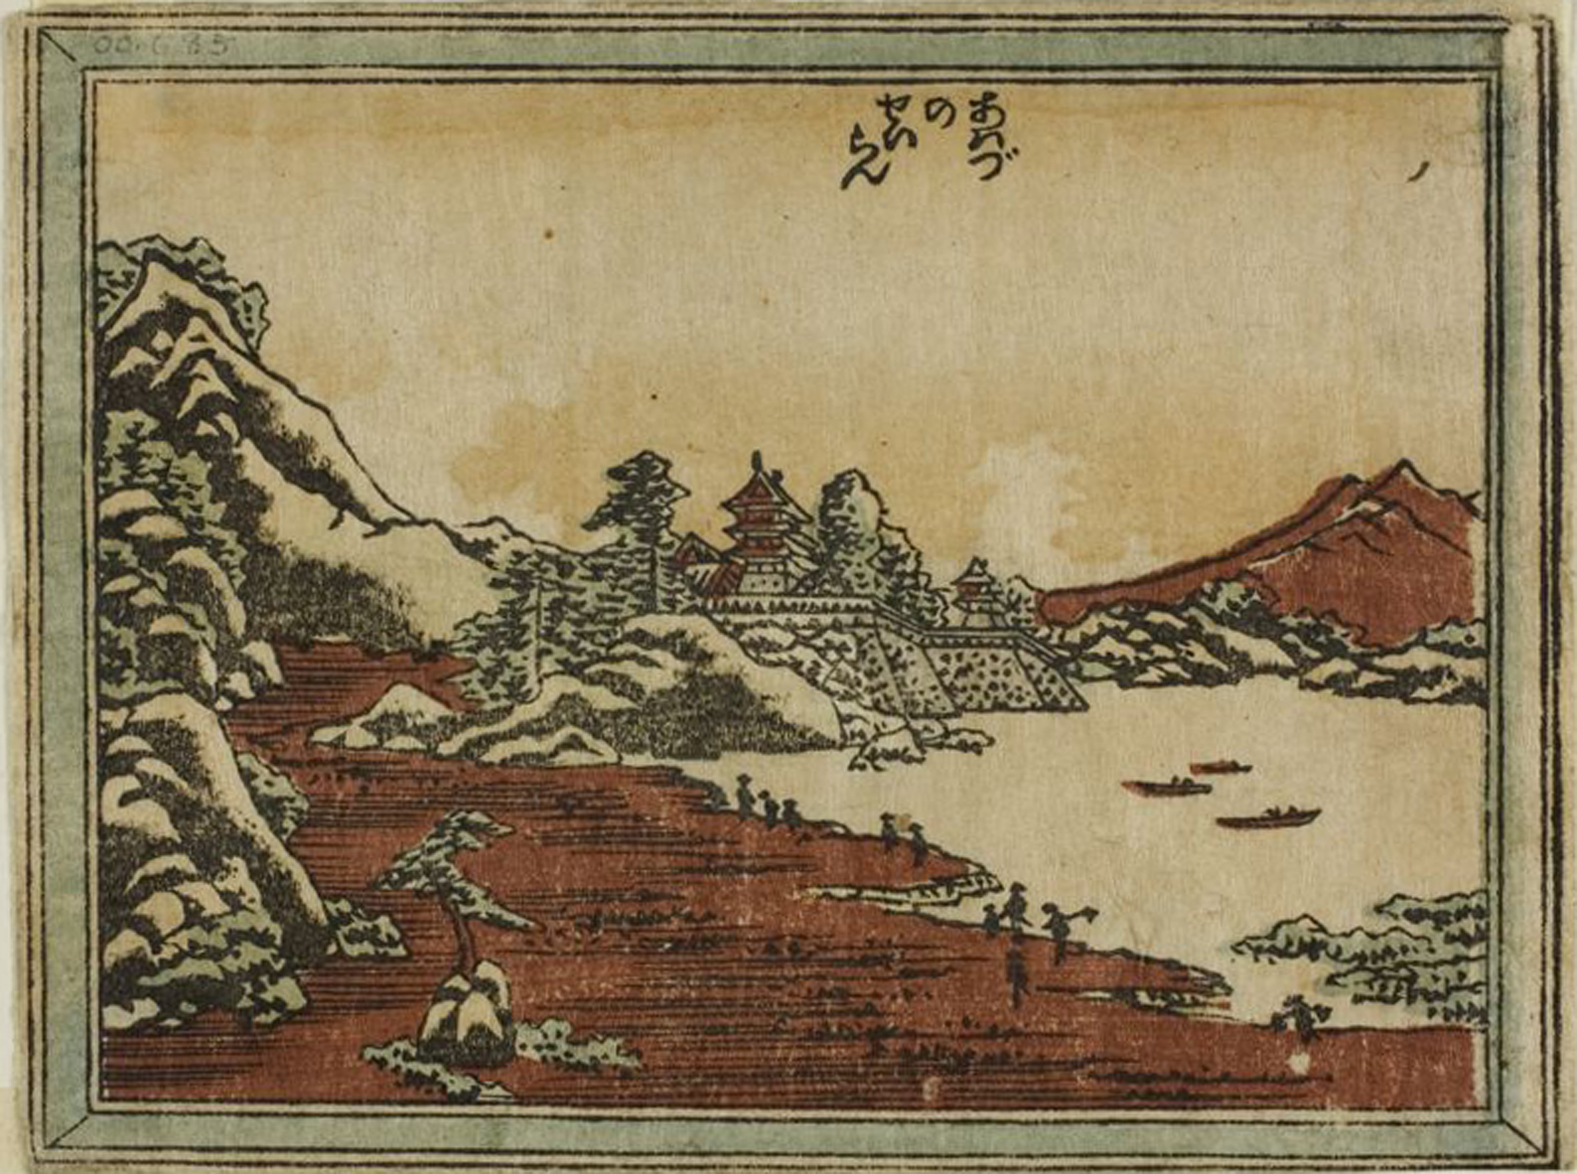 Hokusai - Clearing Weather at Awazu - 1804 Edition